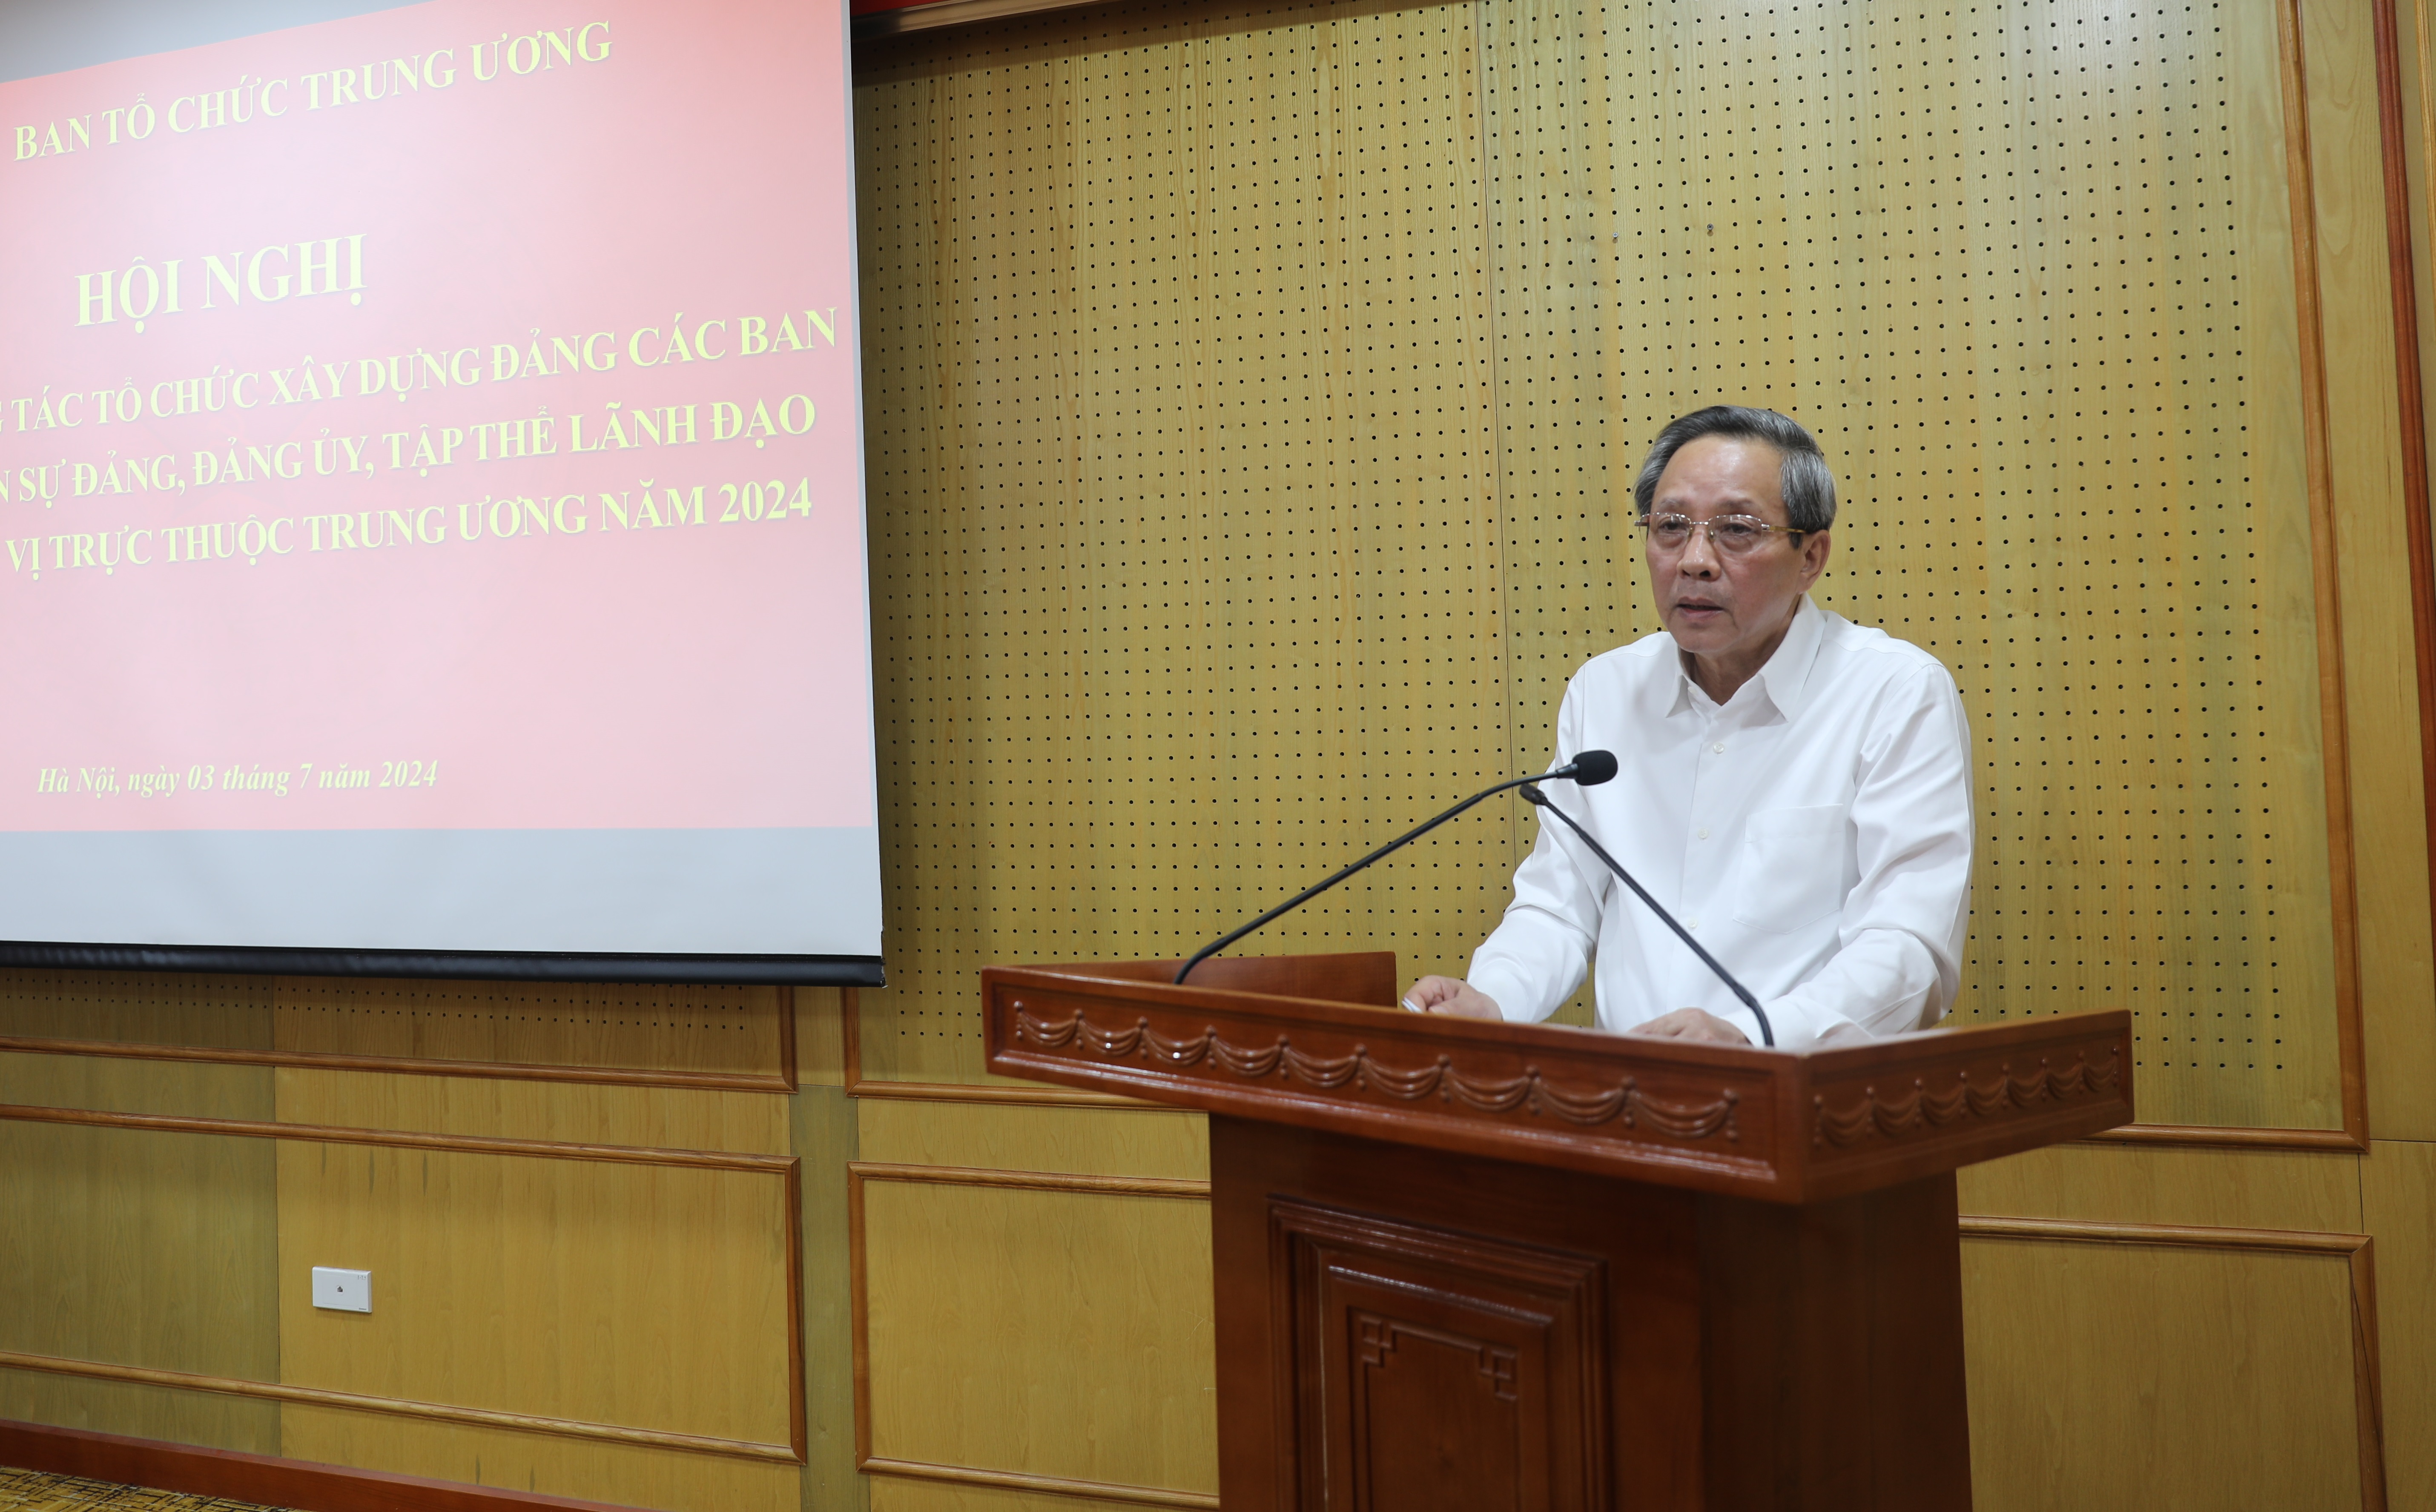 Phó Trưởng Ban Tổ chức Trung ương Hoàng Đăng Quang phát biểu ý kiến kết luận Hội nghị tại Hội trường G, chiều 3-7-2024.